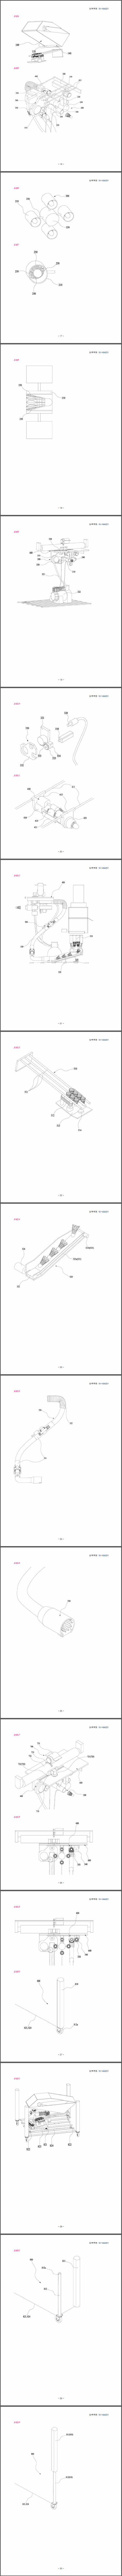 특허 제10-1434251호(셔틀콕 자동 수거 및 공급 장치, 이상수, 